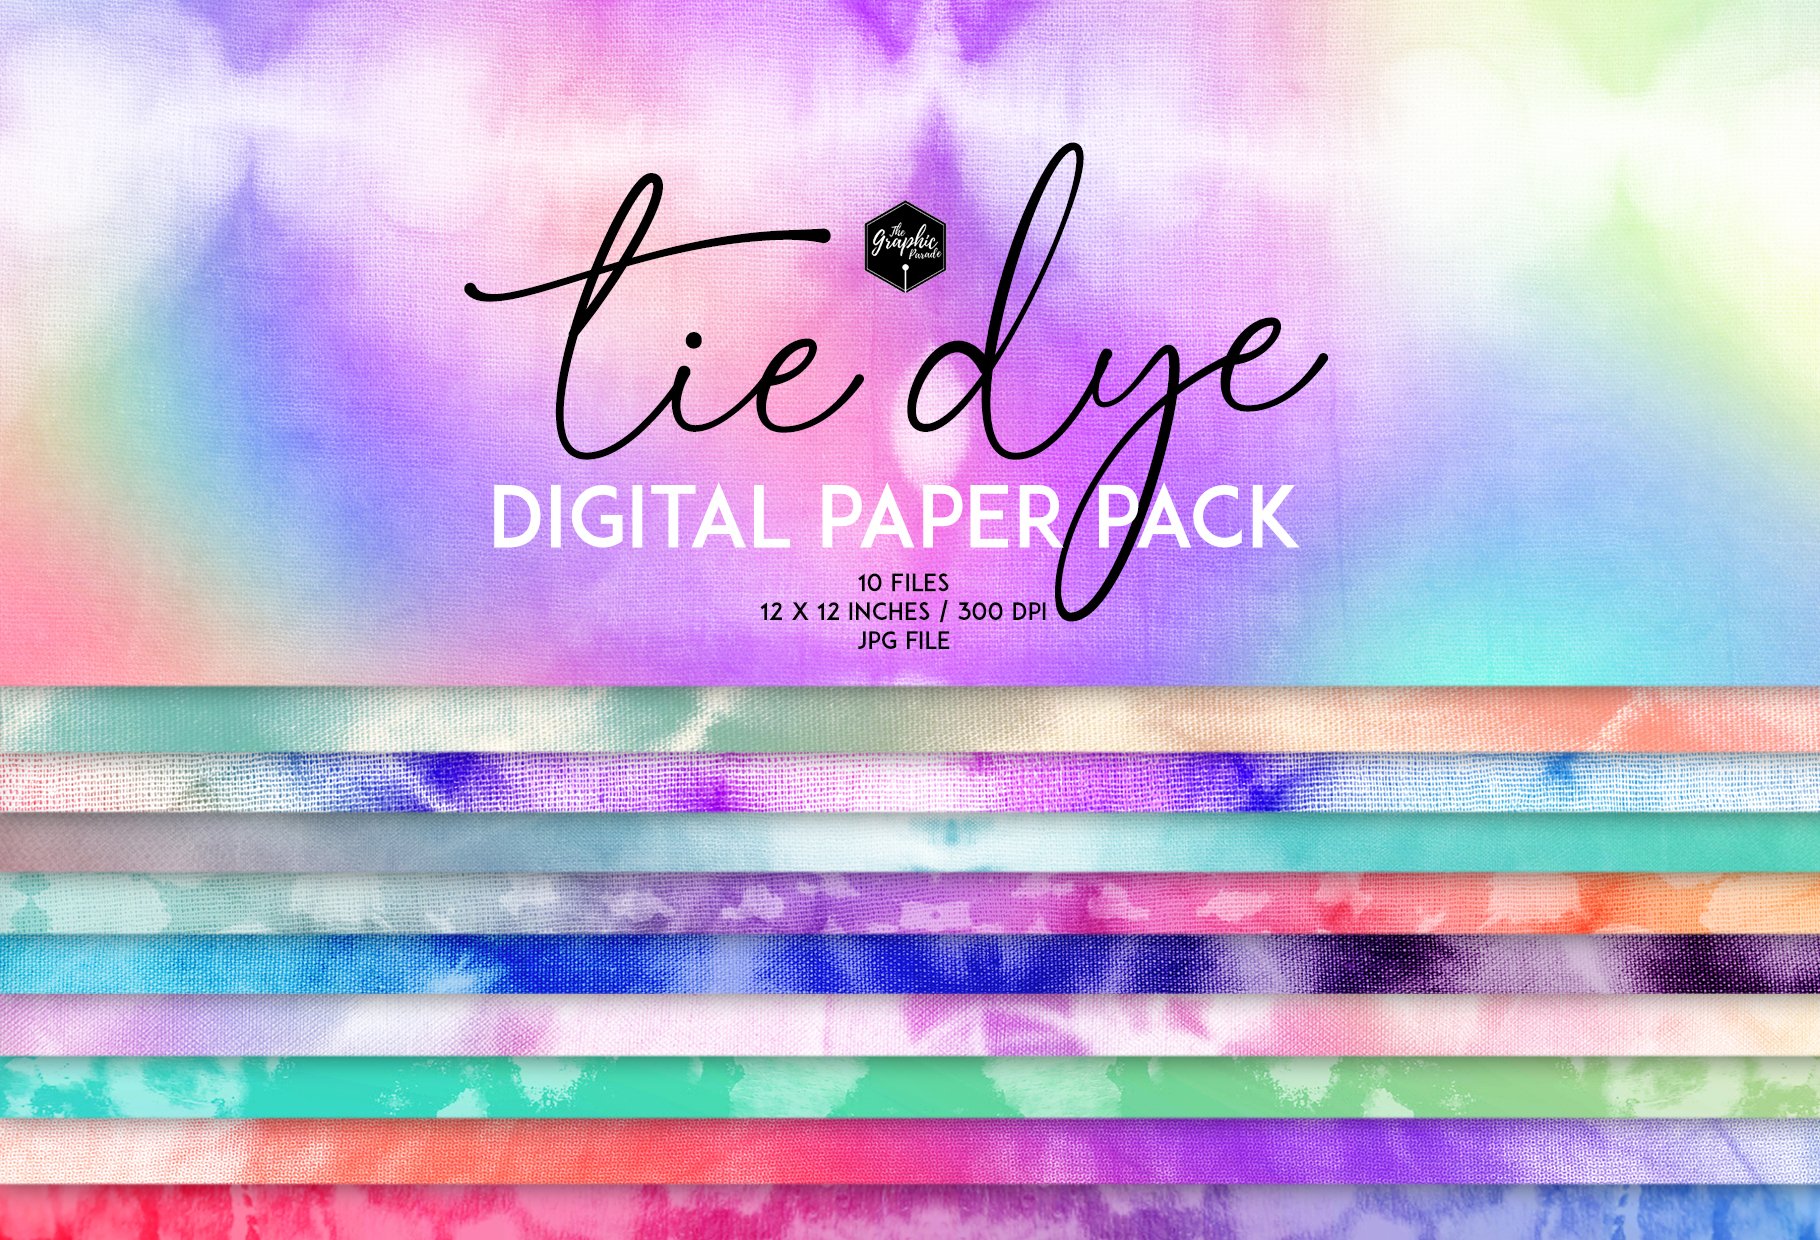 Tie dye digital paper pack cover image.